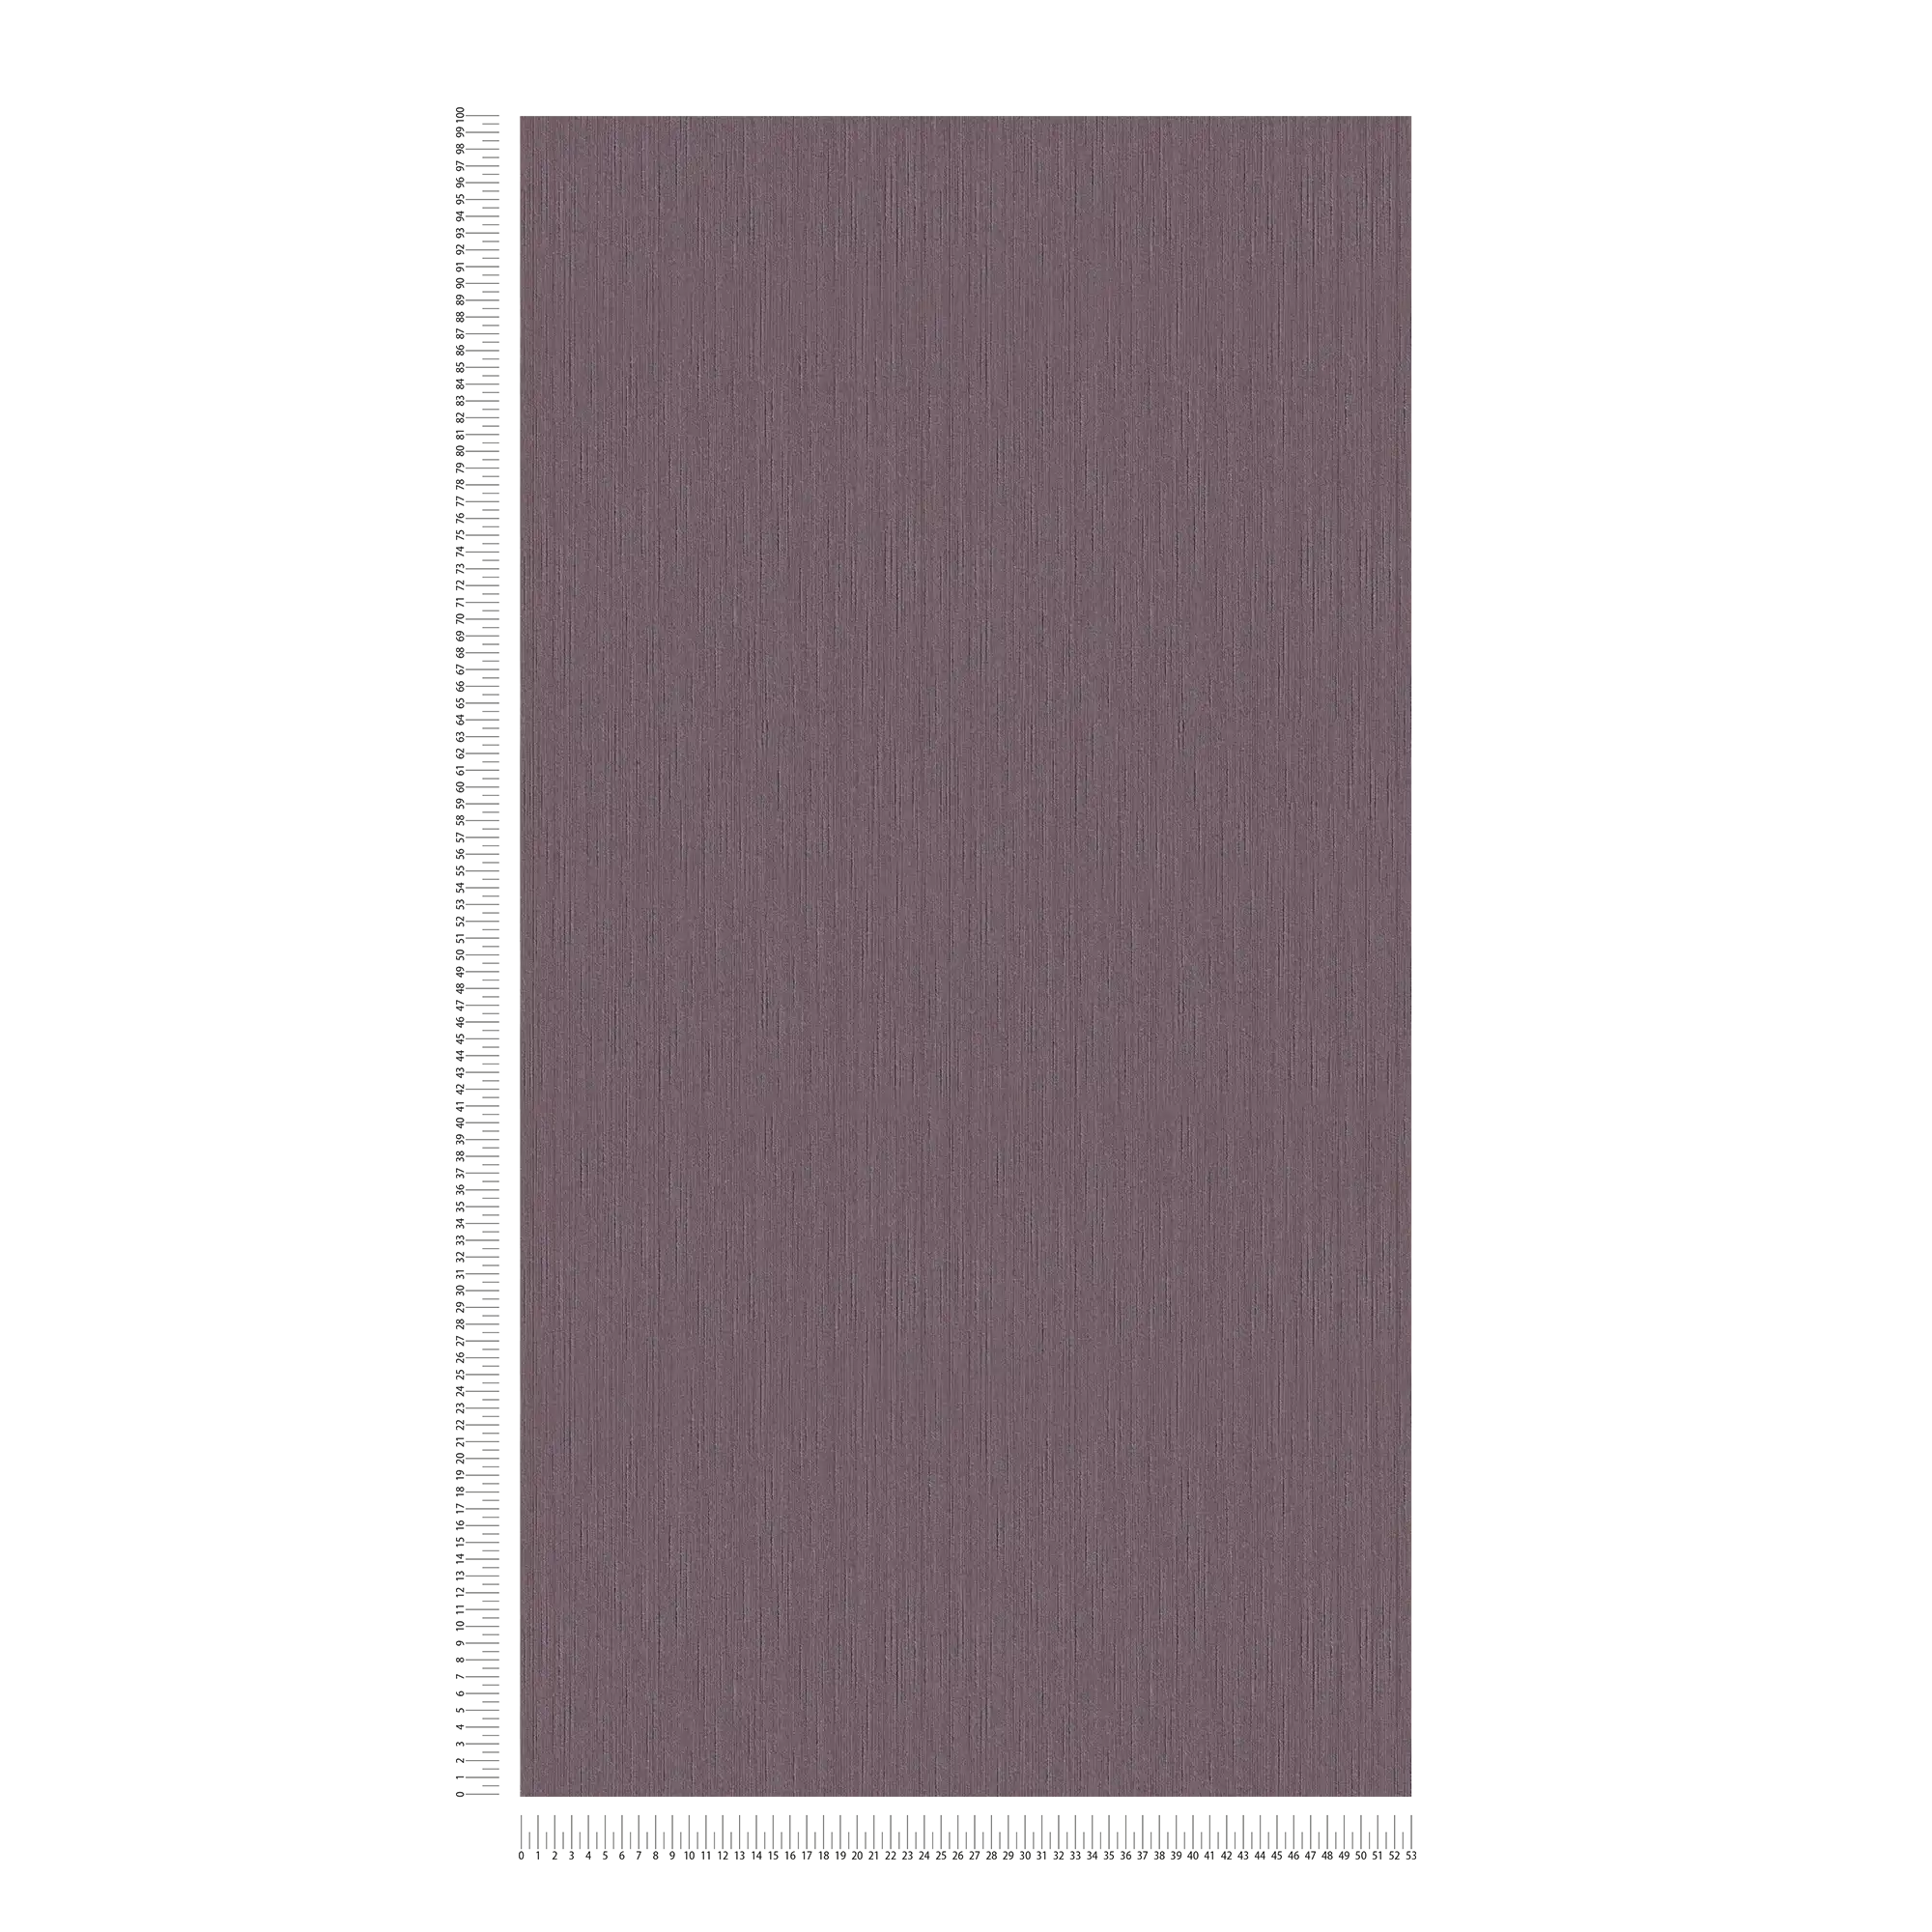             Carta da parati color malva scuro con struttura naturale - viola, porpora
        